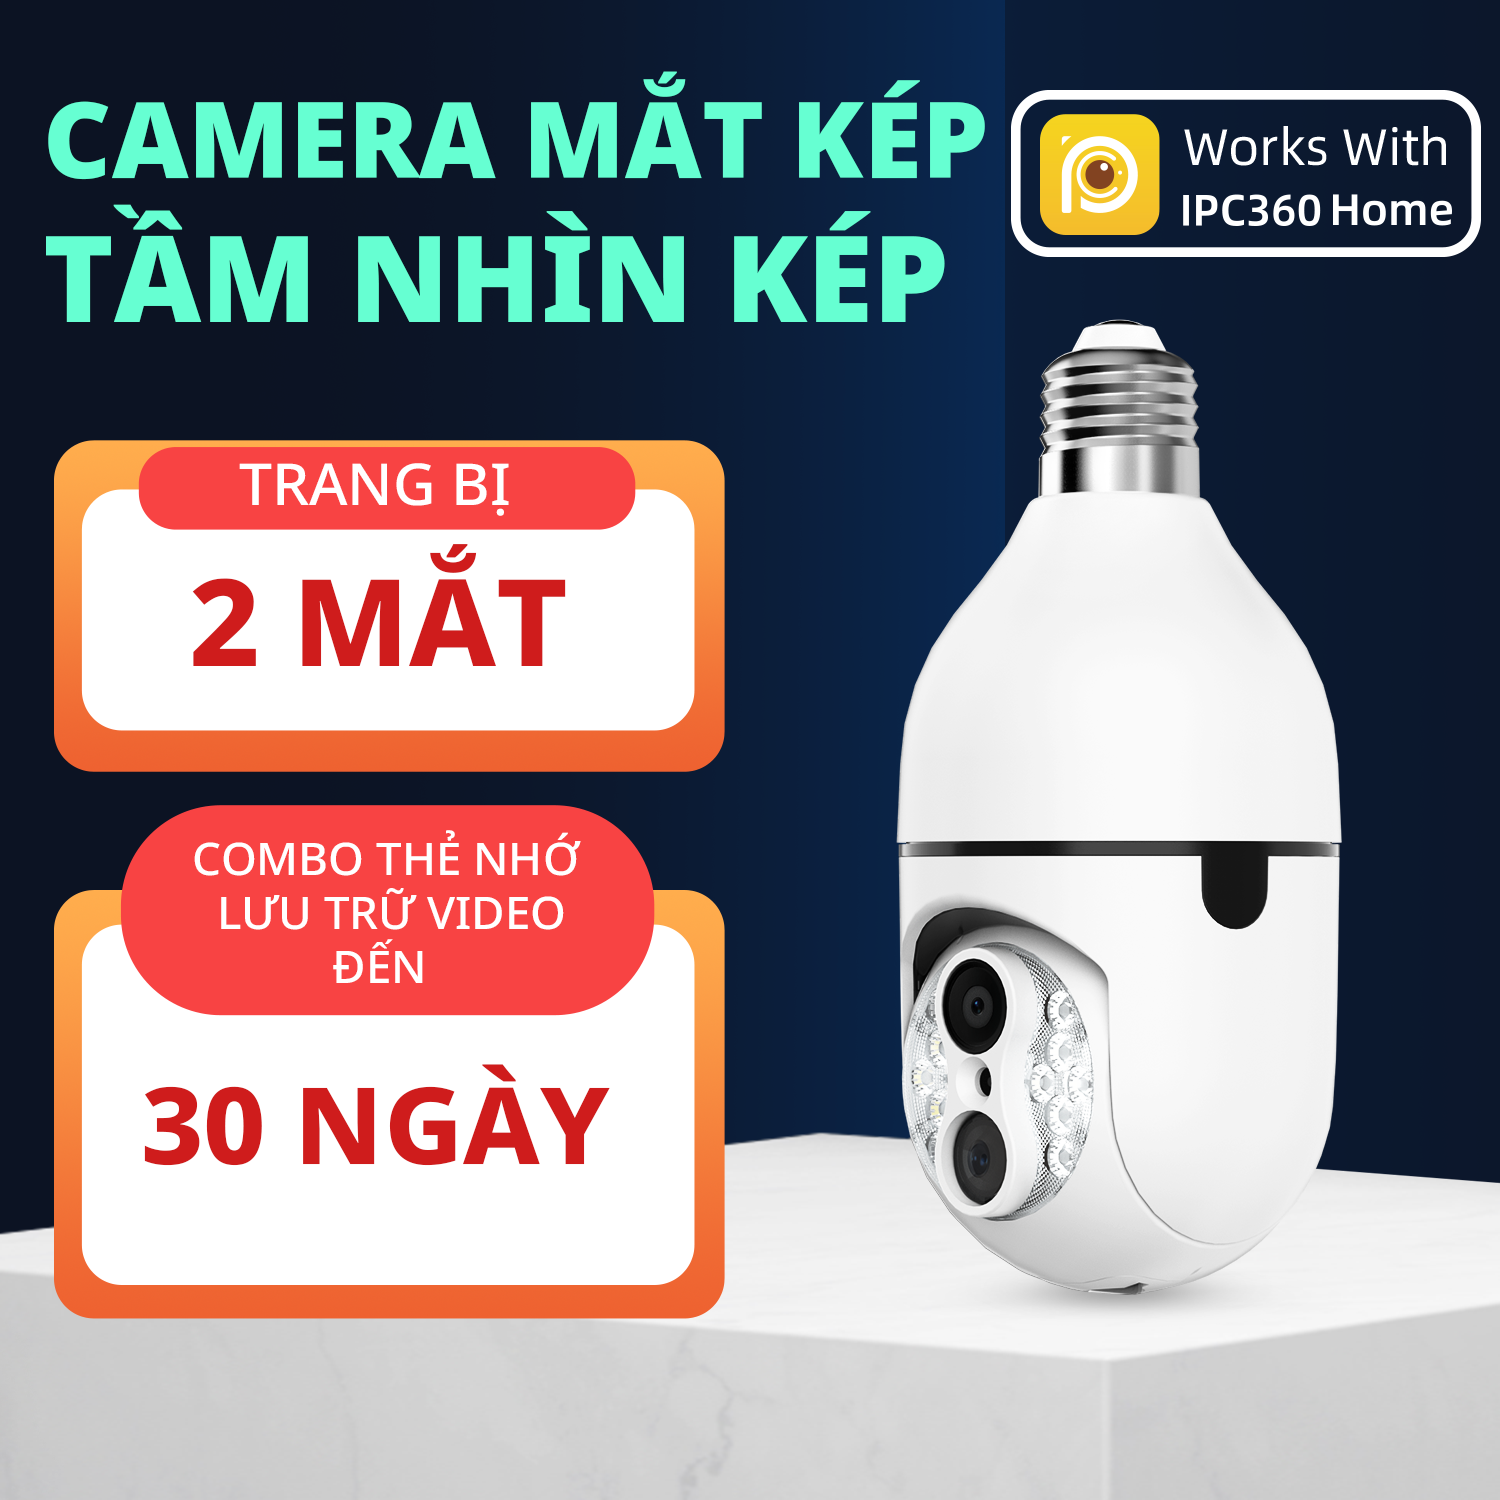 (Giao hoả tốc 2h) Camera Wifi IPC360 Home chuôi bóng đèn 2 ống kính 1080P (FHD), xoay ngang 360 độ, thu phóng 8 lần (Hàng nhập khẩu)